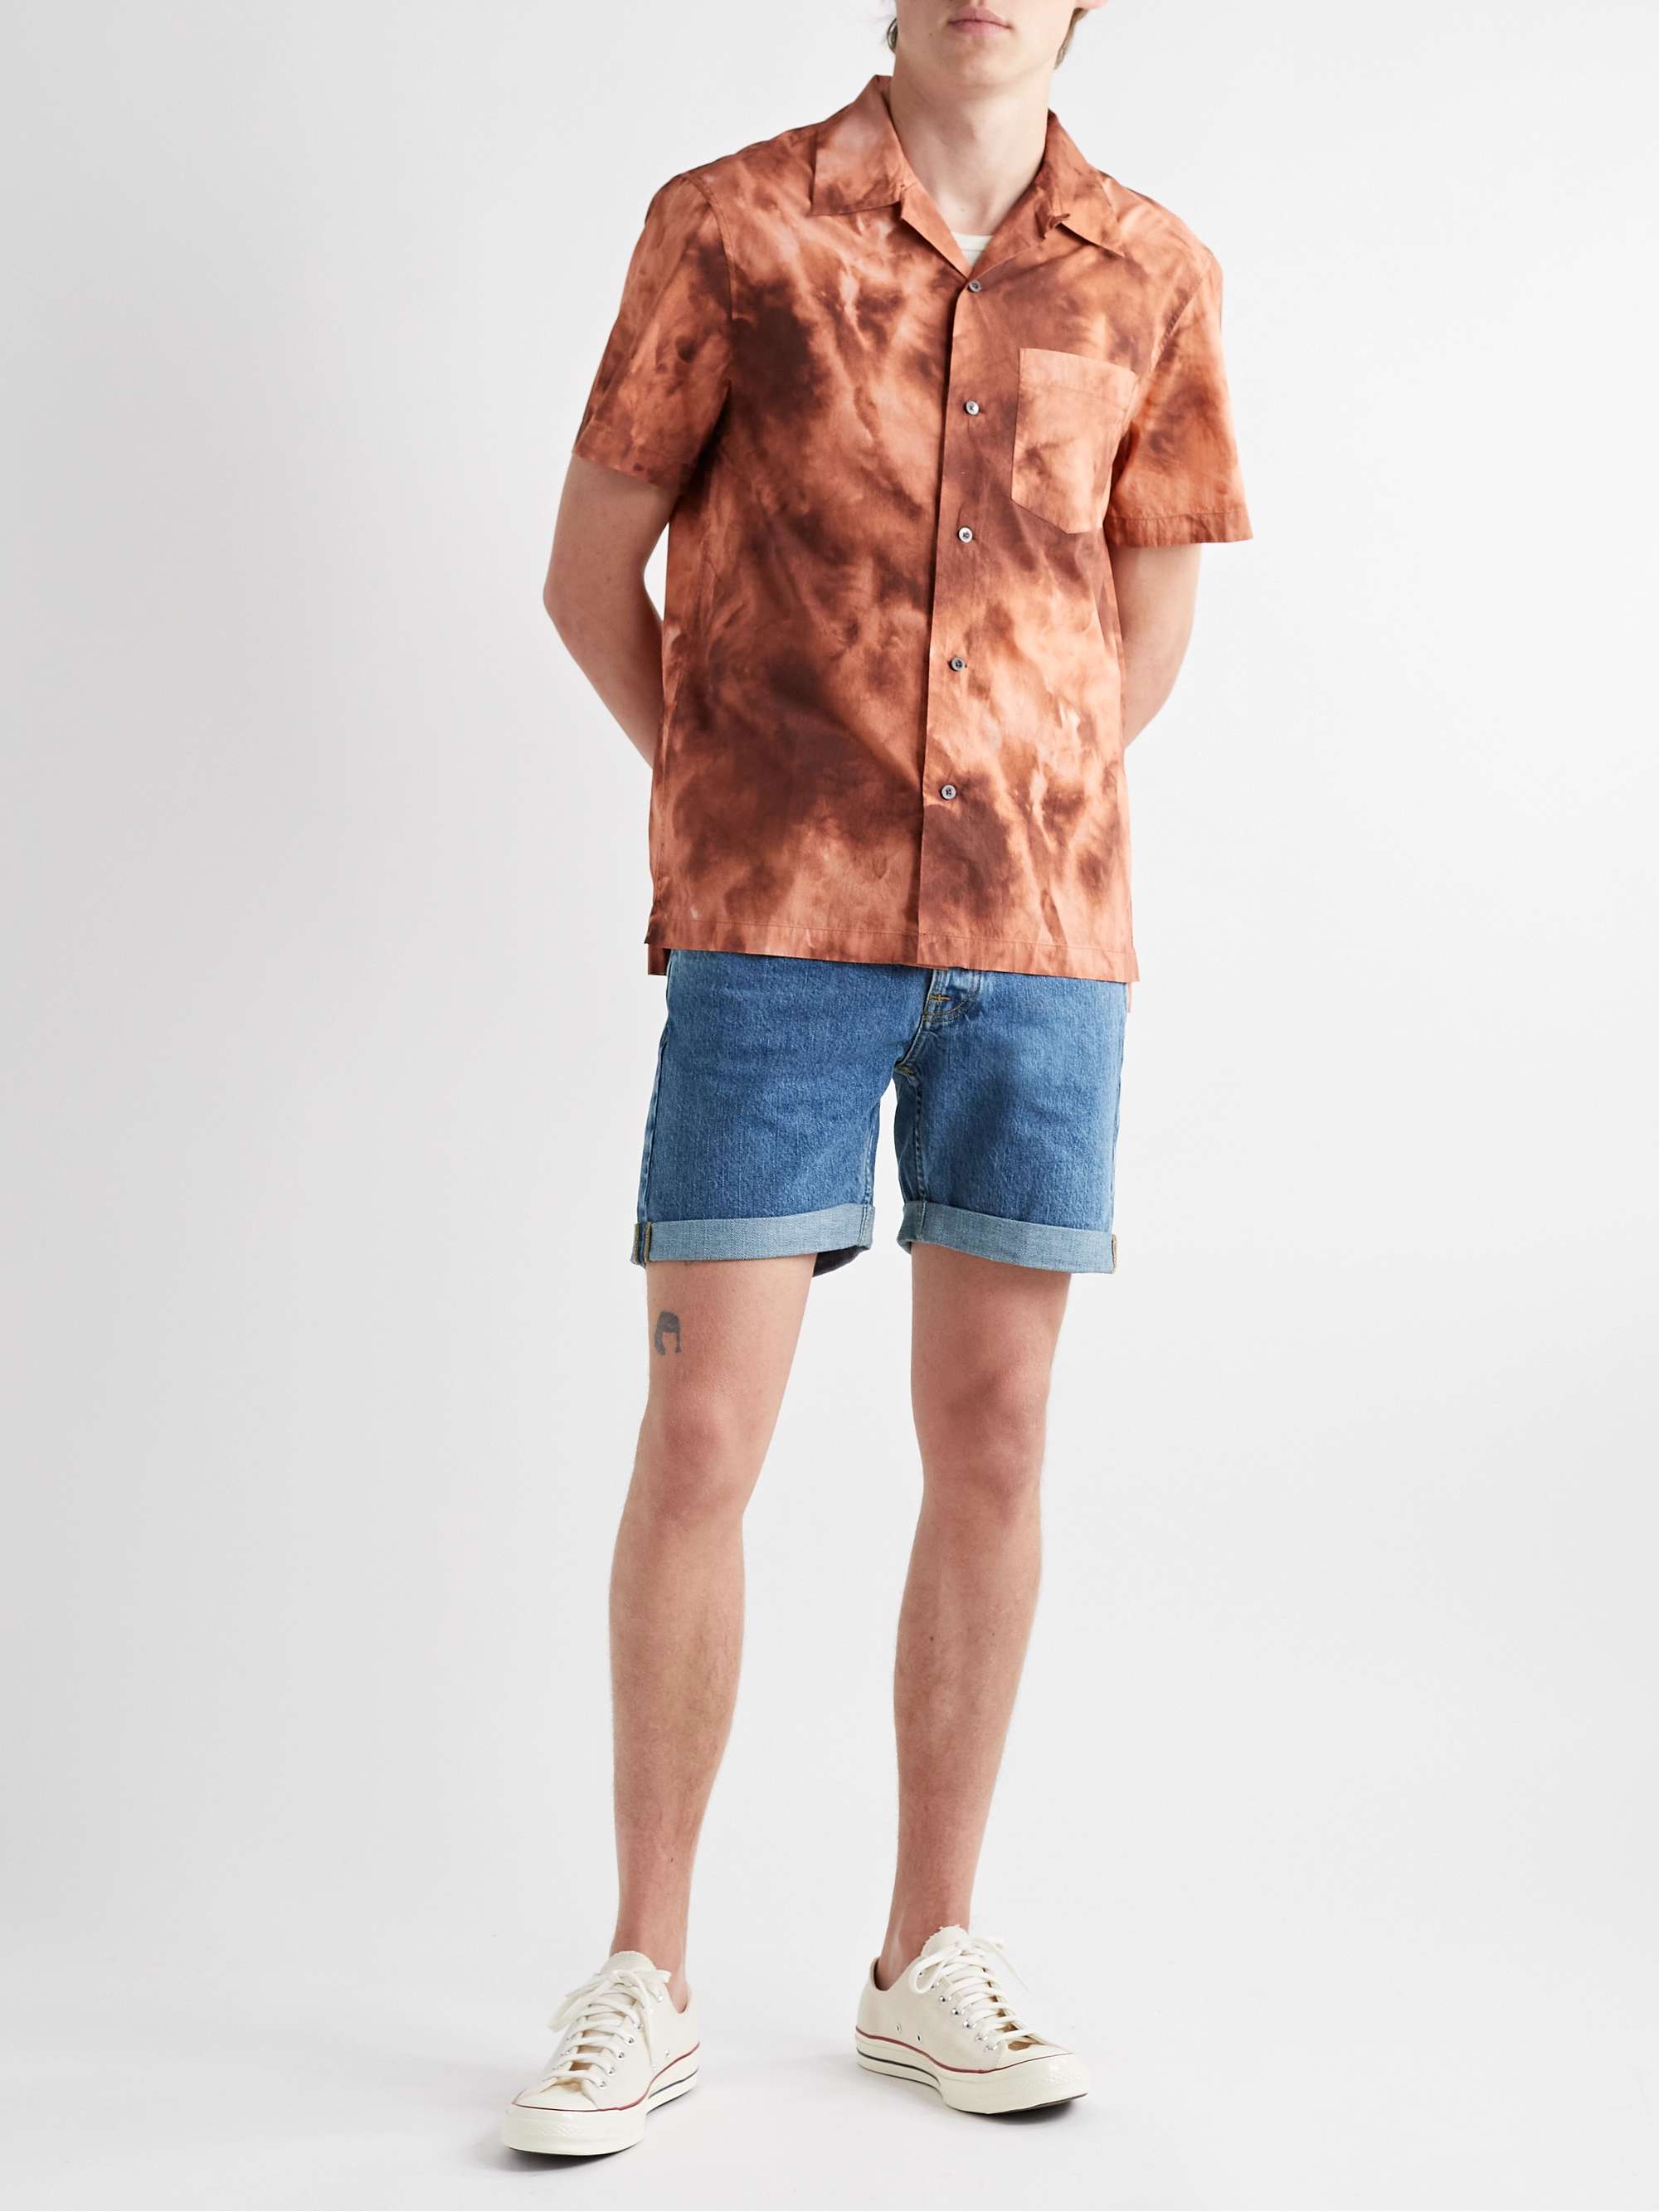 NUDIE JEANS Josh Straight-Leg Organic Denim Shorts for Men | MR PORTER